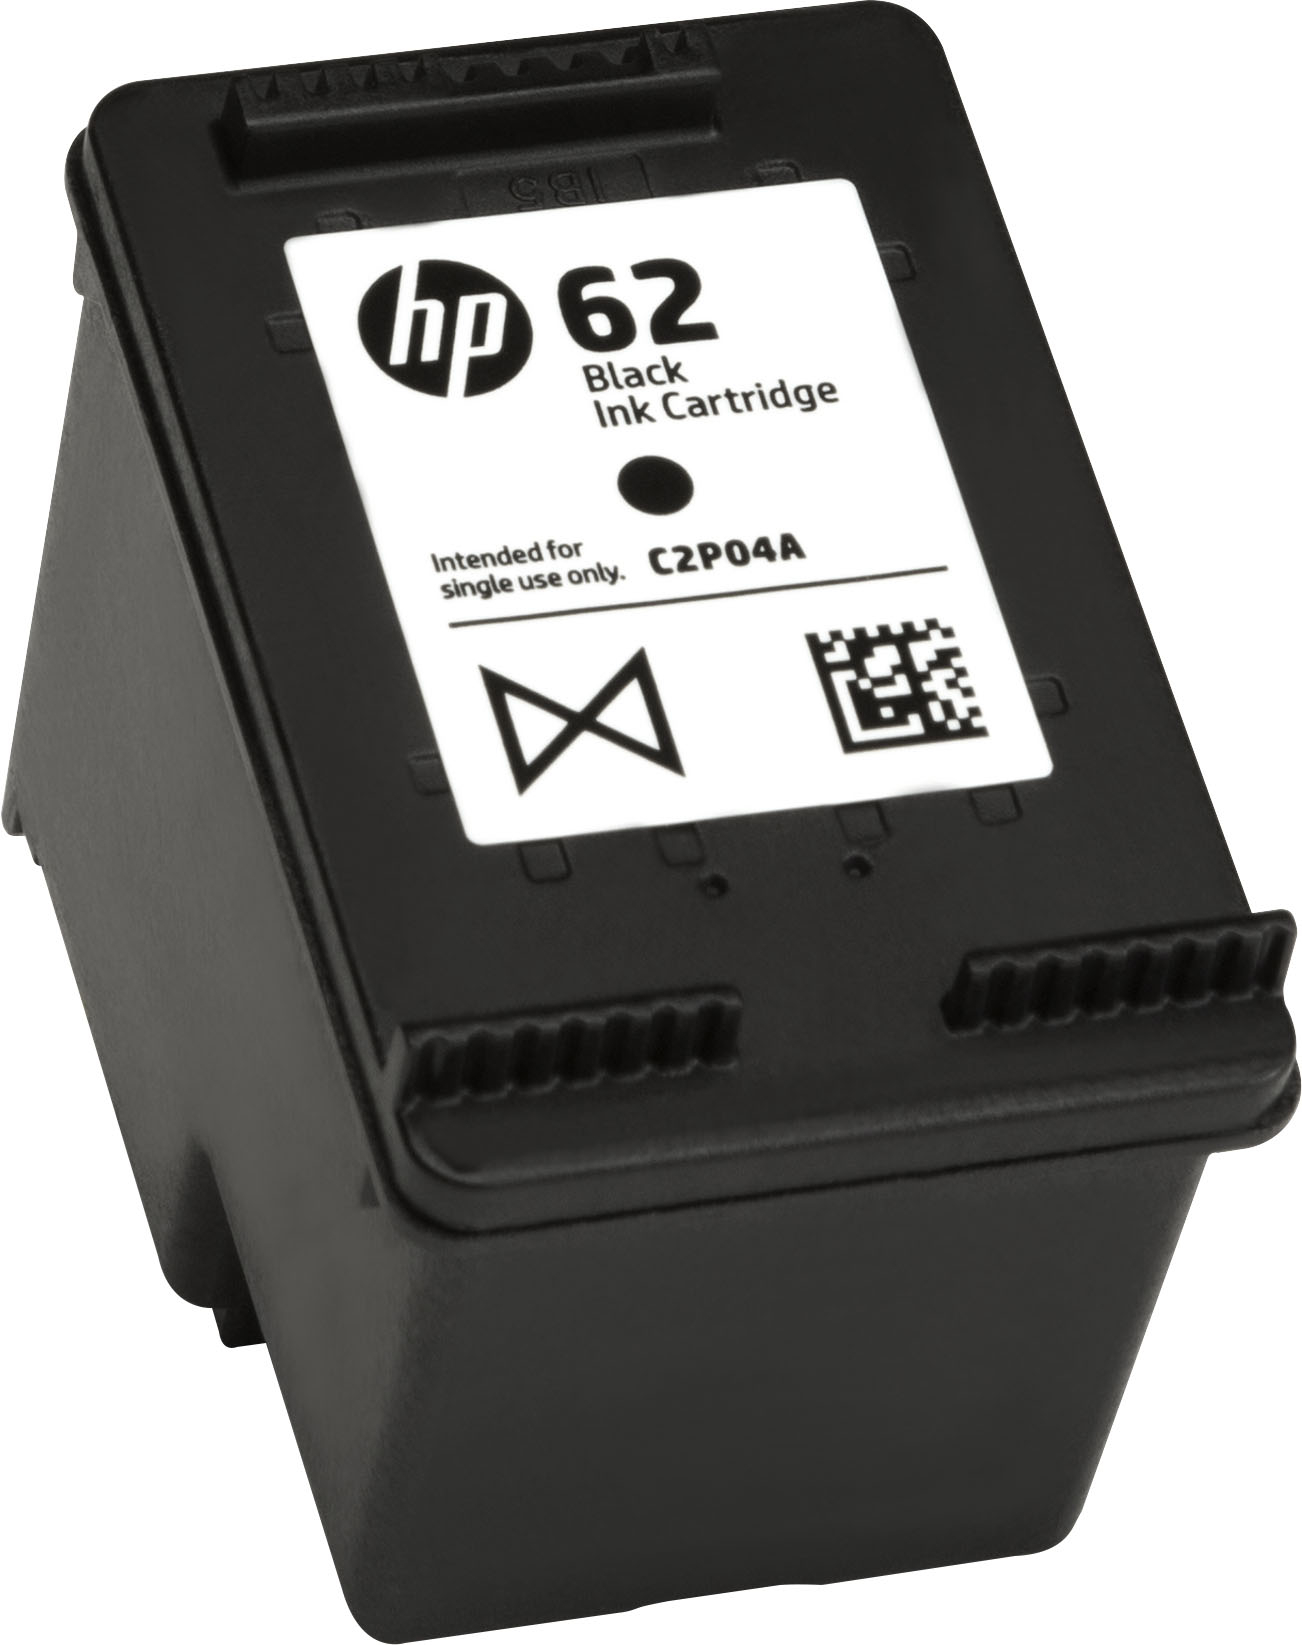 De vreemdeling boog Onvergetelijk HP 62 Standard Capacity Ink Cartridge Black C2P04AN#140 - Best Buy